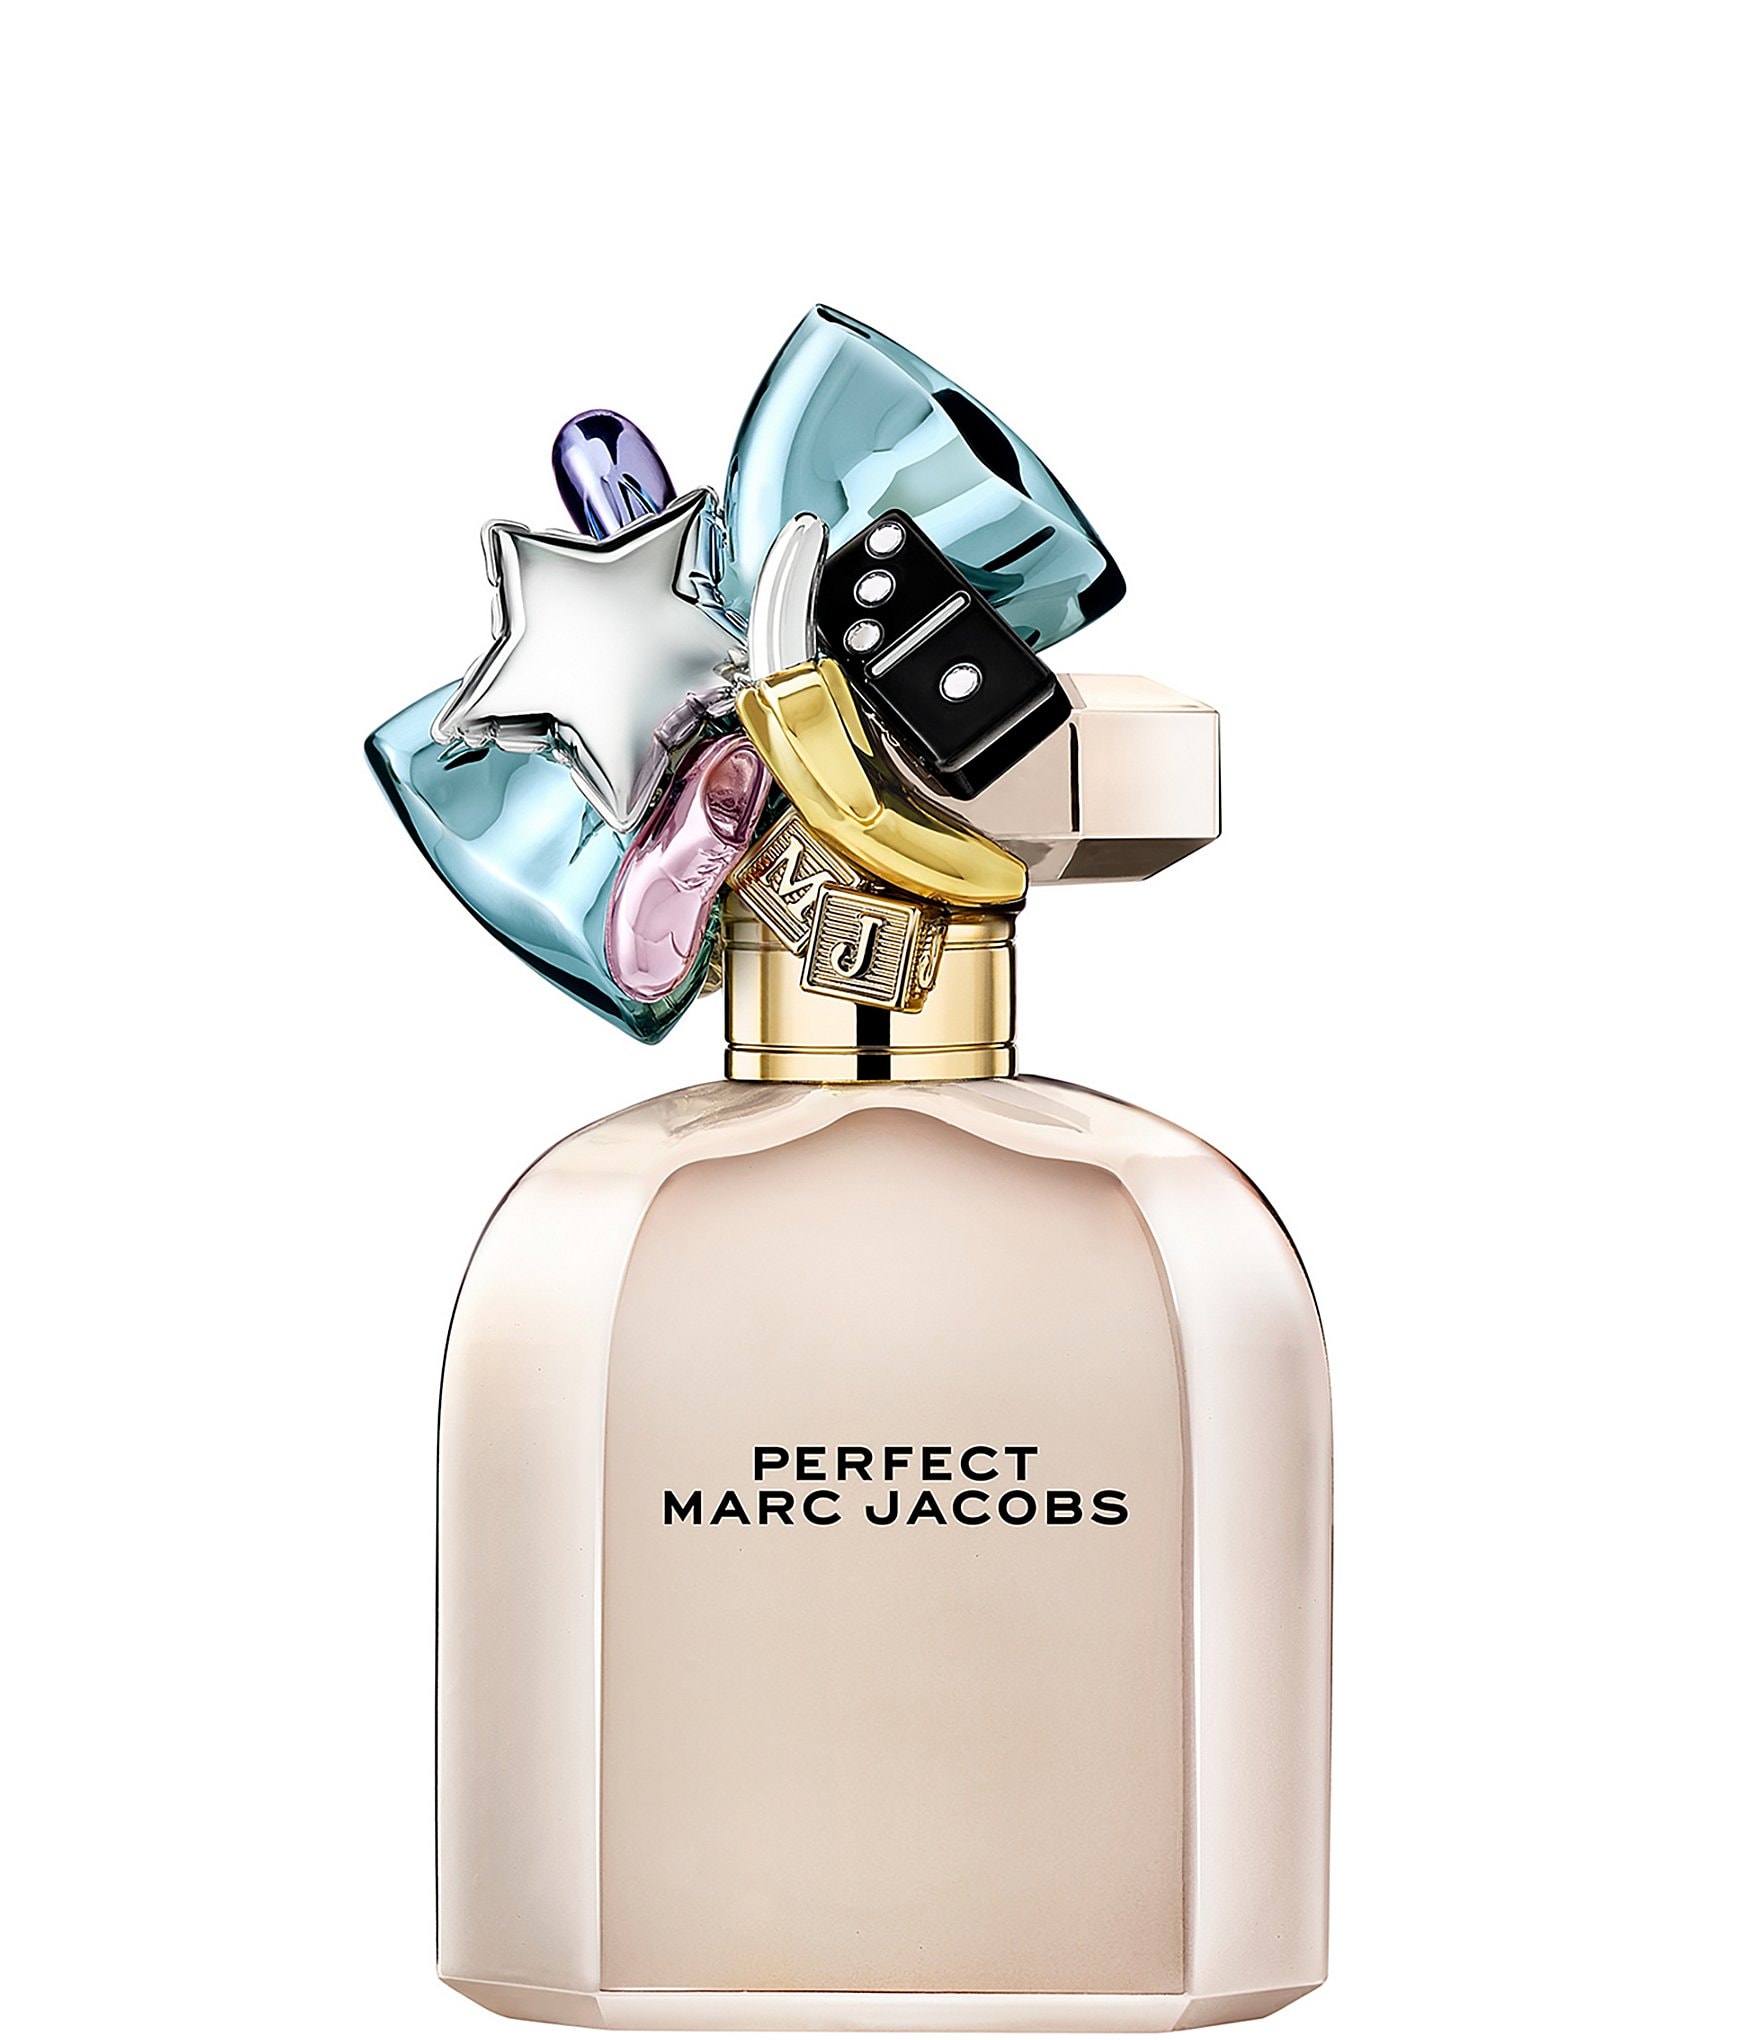  Marc Jacobs Perfect Intense for Women Eau de Parfum Spray, 1.6  Ounce : Beauty & Personal Care